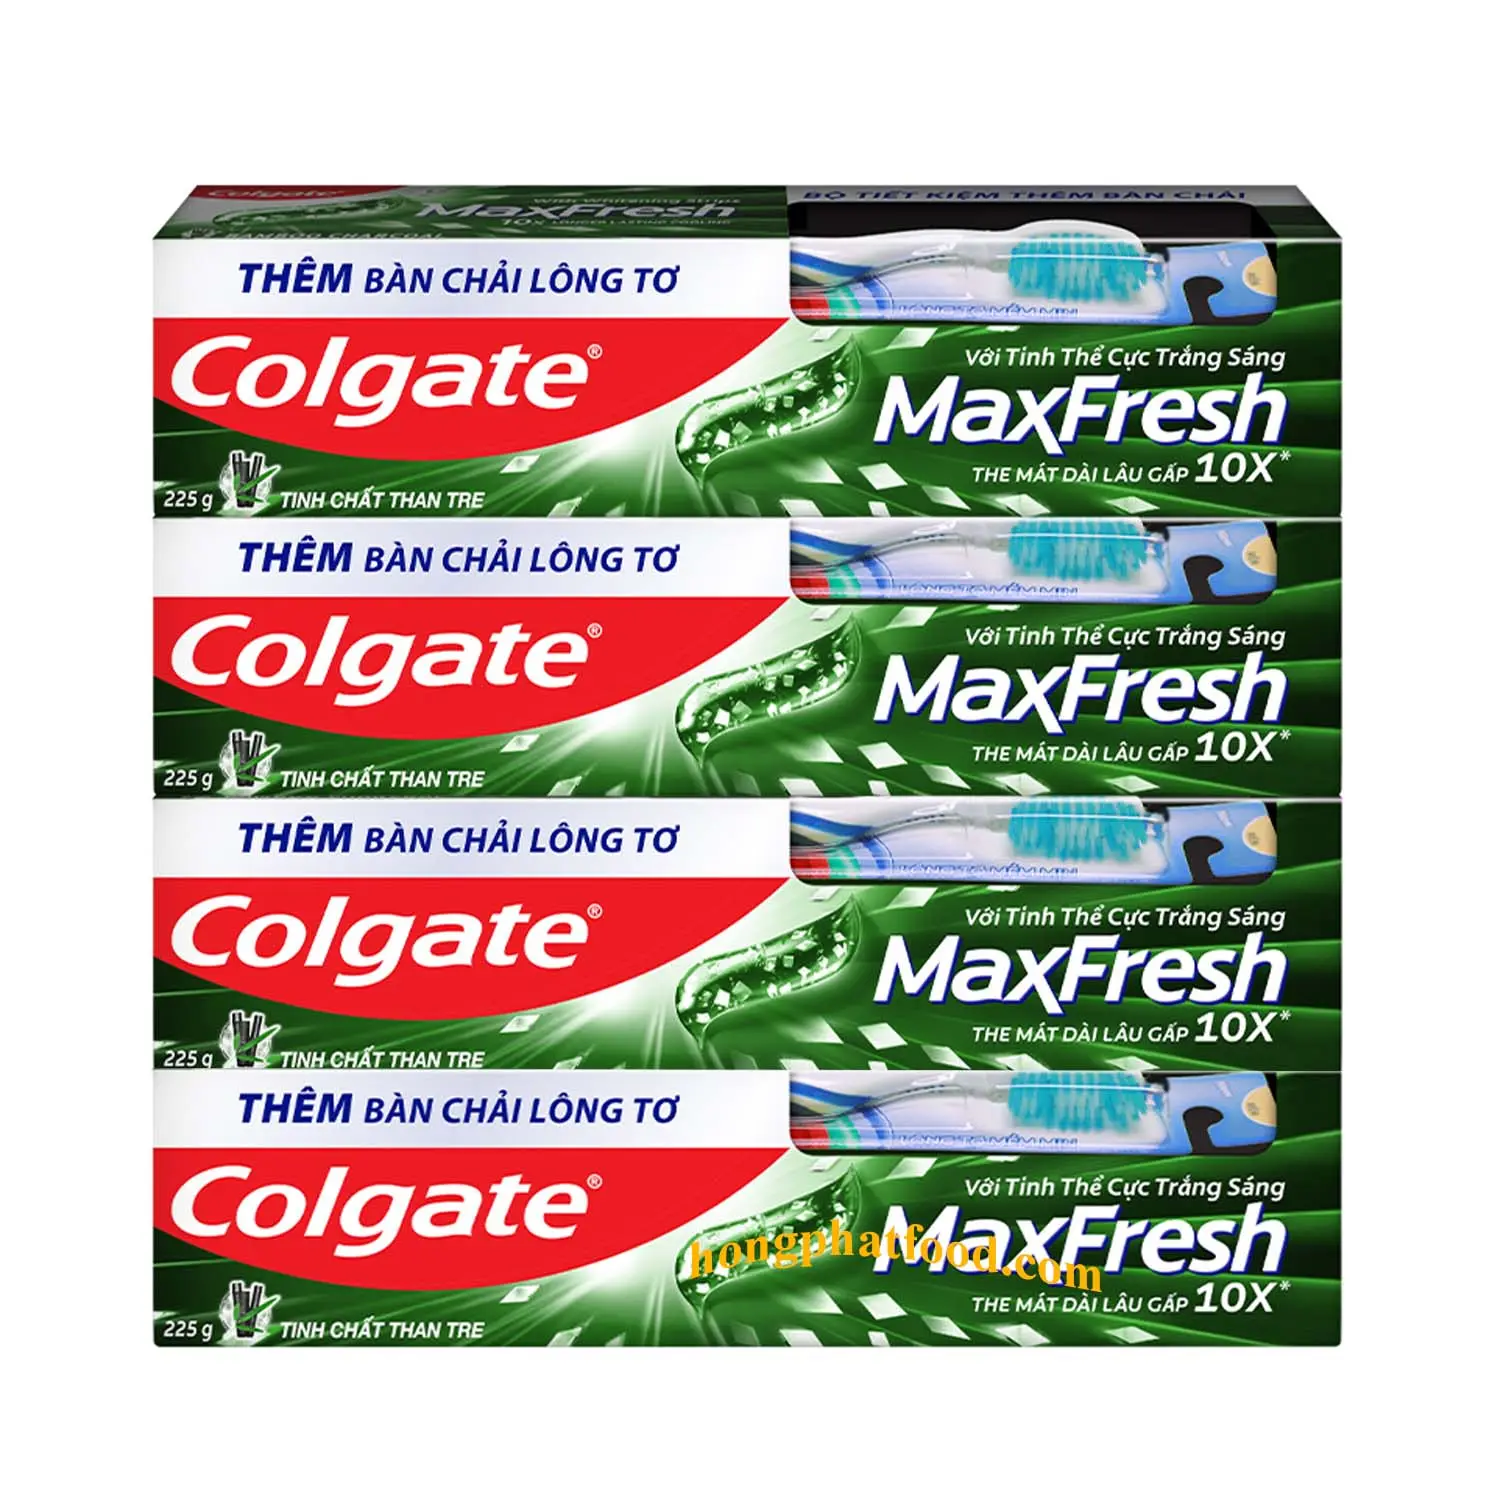 Chất Lượng Tuyệt Vời Colgatee Maxfresh Than Tre Tinh Chất 225gx36 Ống Mát X10 Lần Cho Độ Nhạy Răng Khoang Răng